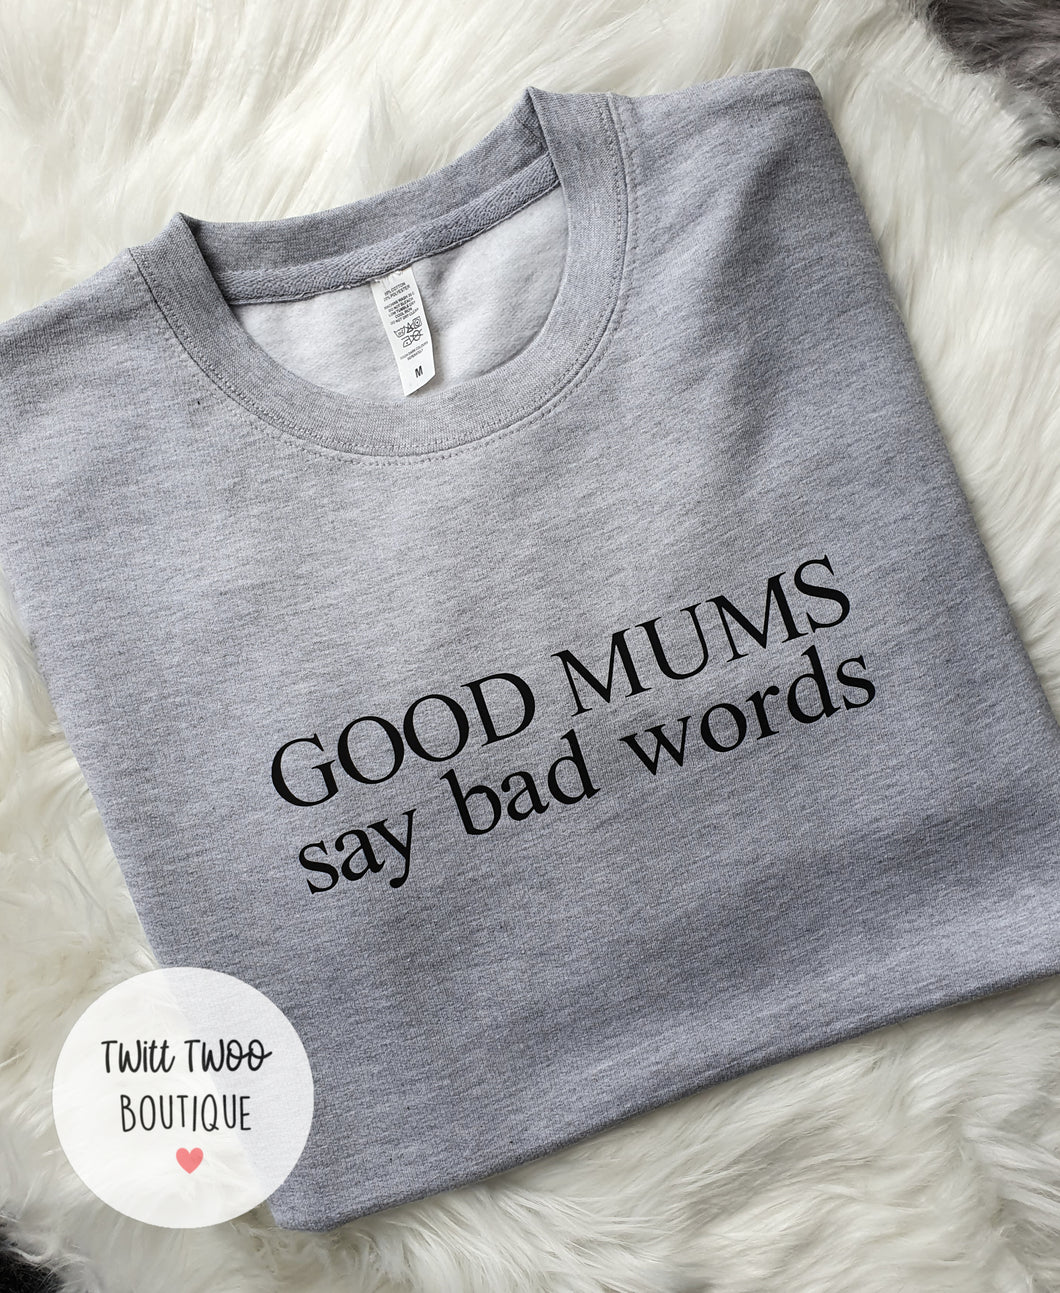 Good mums say bad words sweatshirt